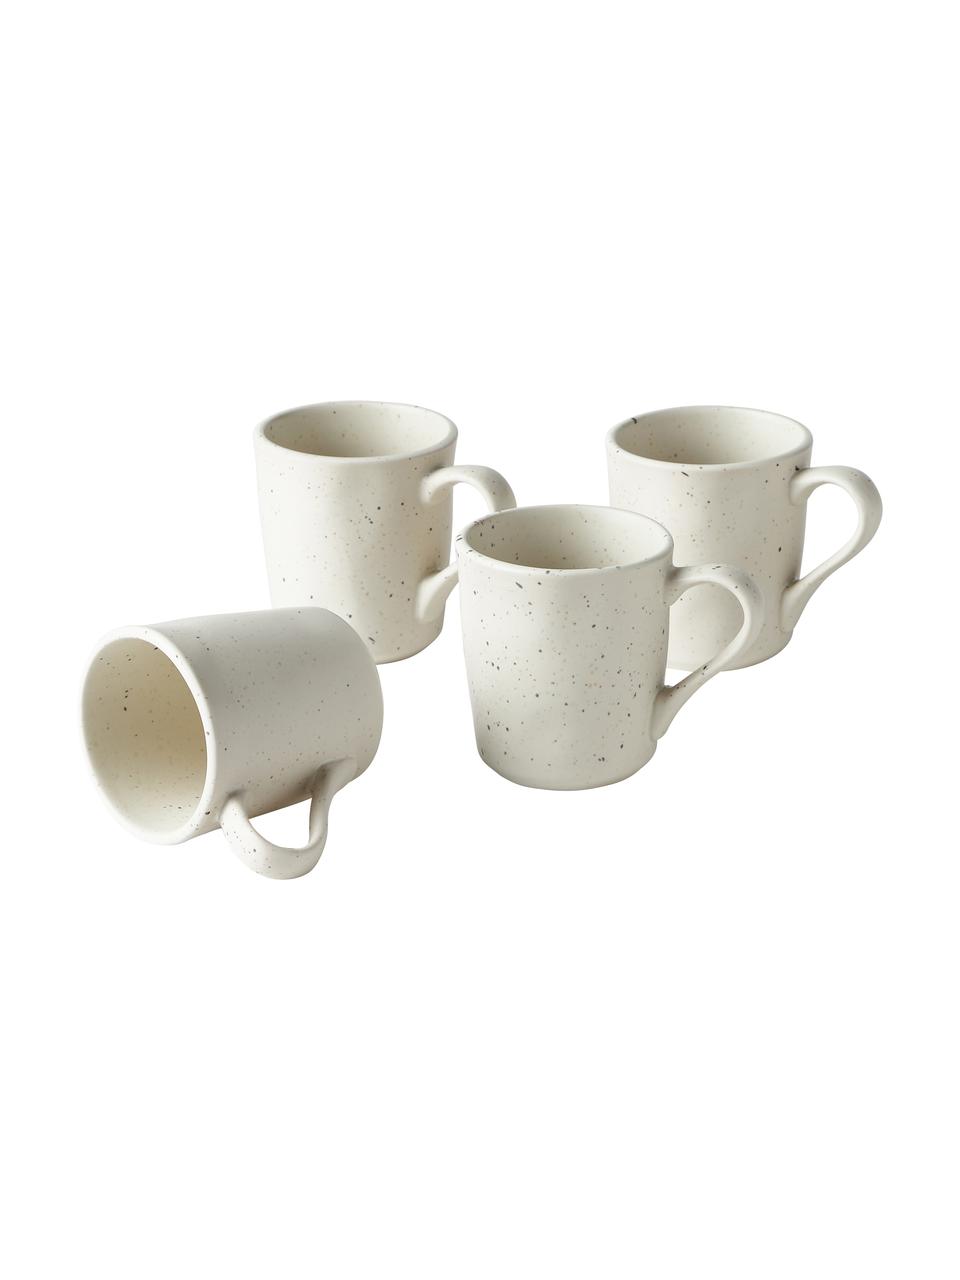 Kaffeetassen Marlee in Cremeweiß, 4 Stück, Steingut, Weiß, Ø 9 x H 10 cm